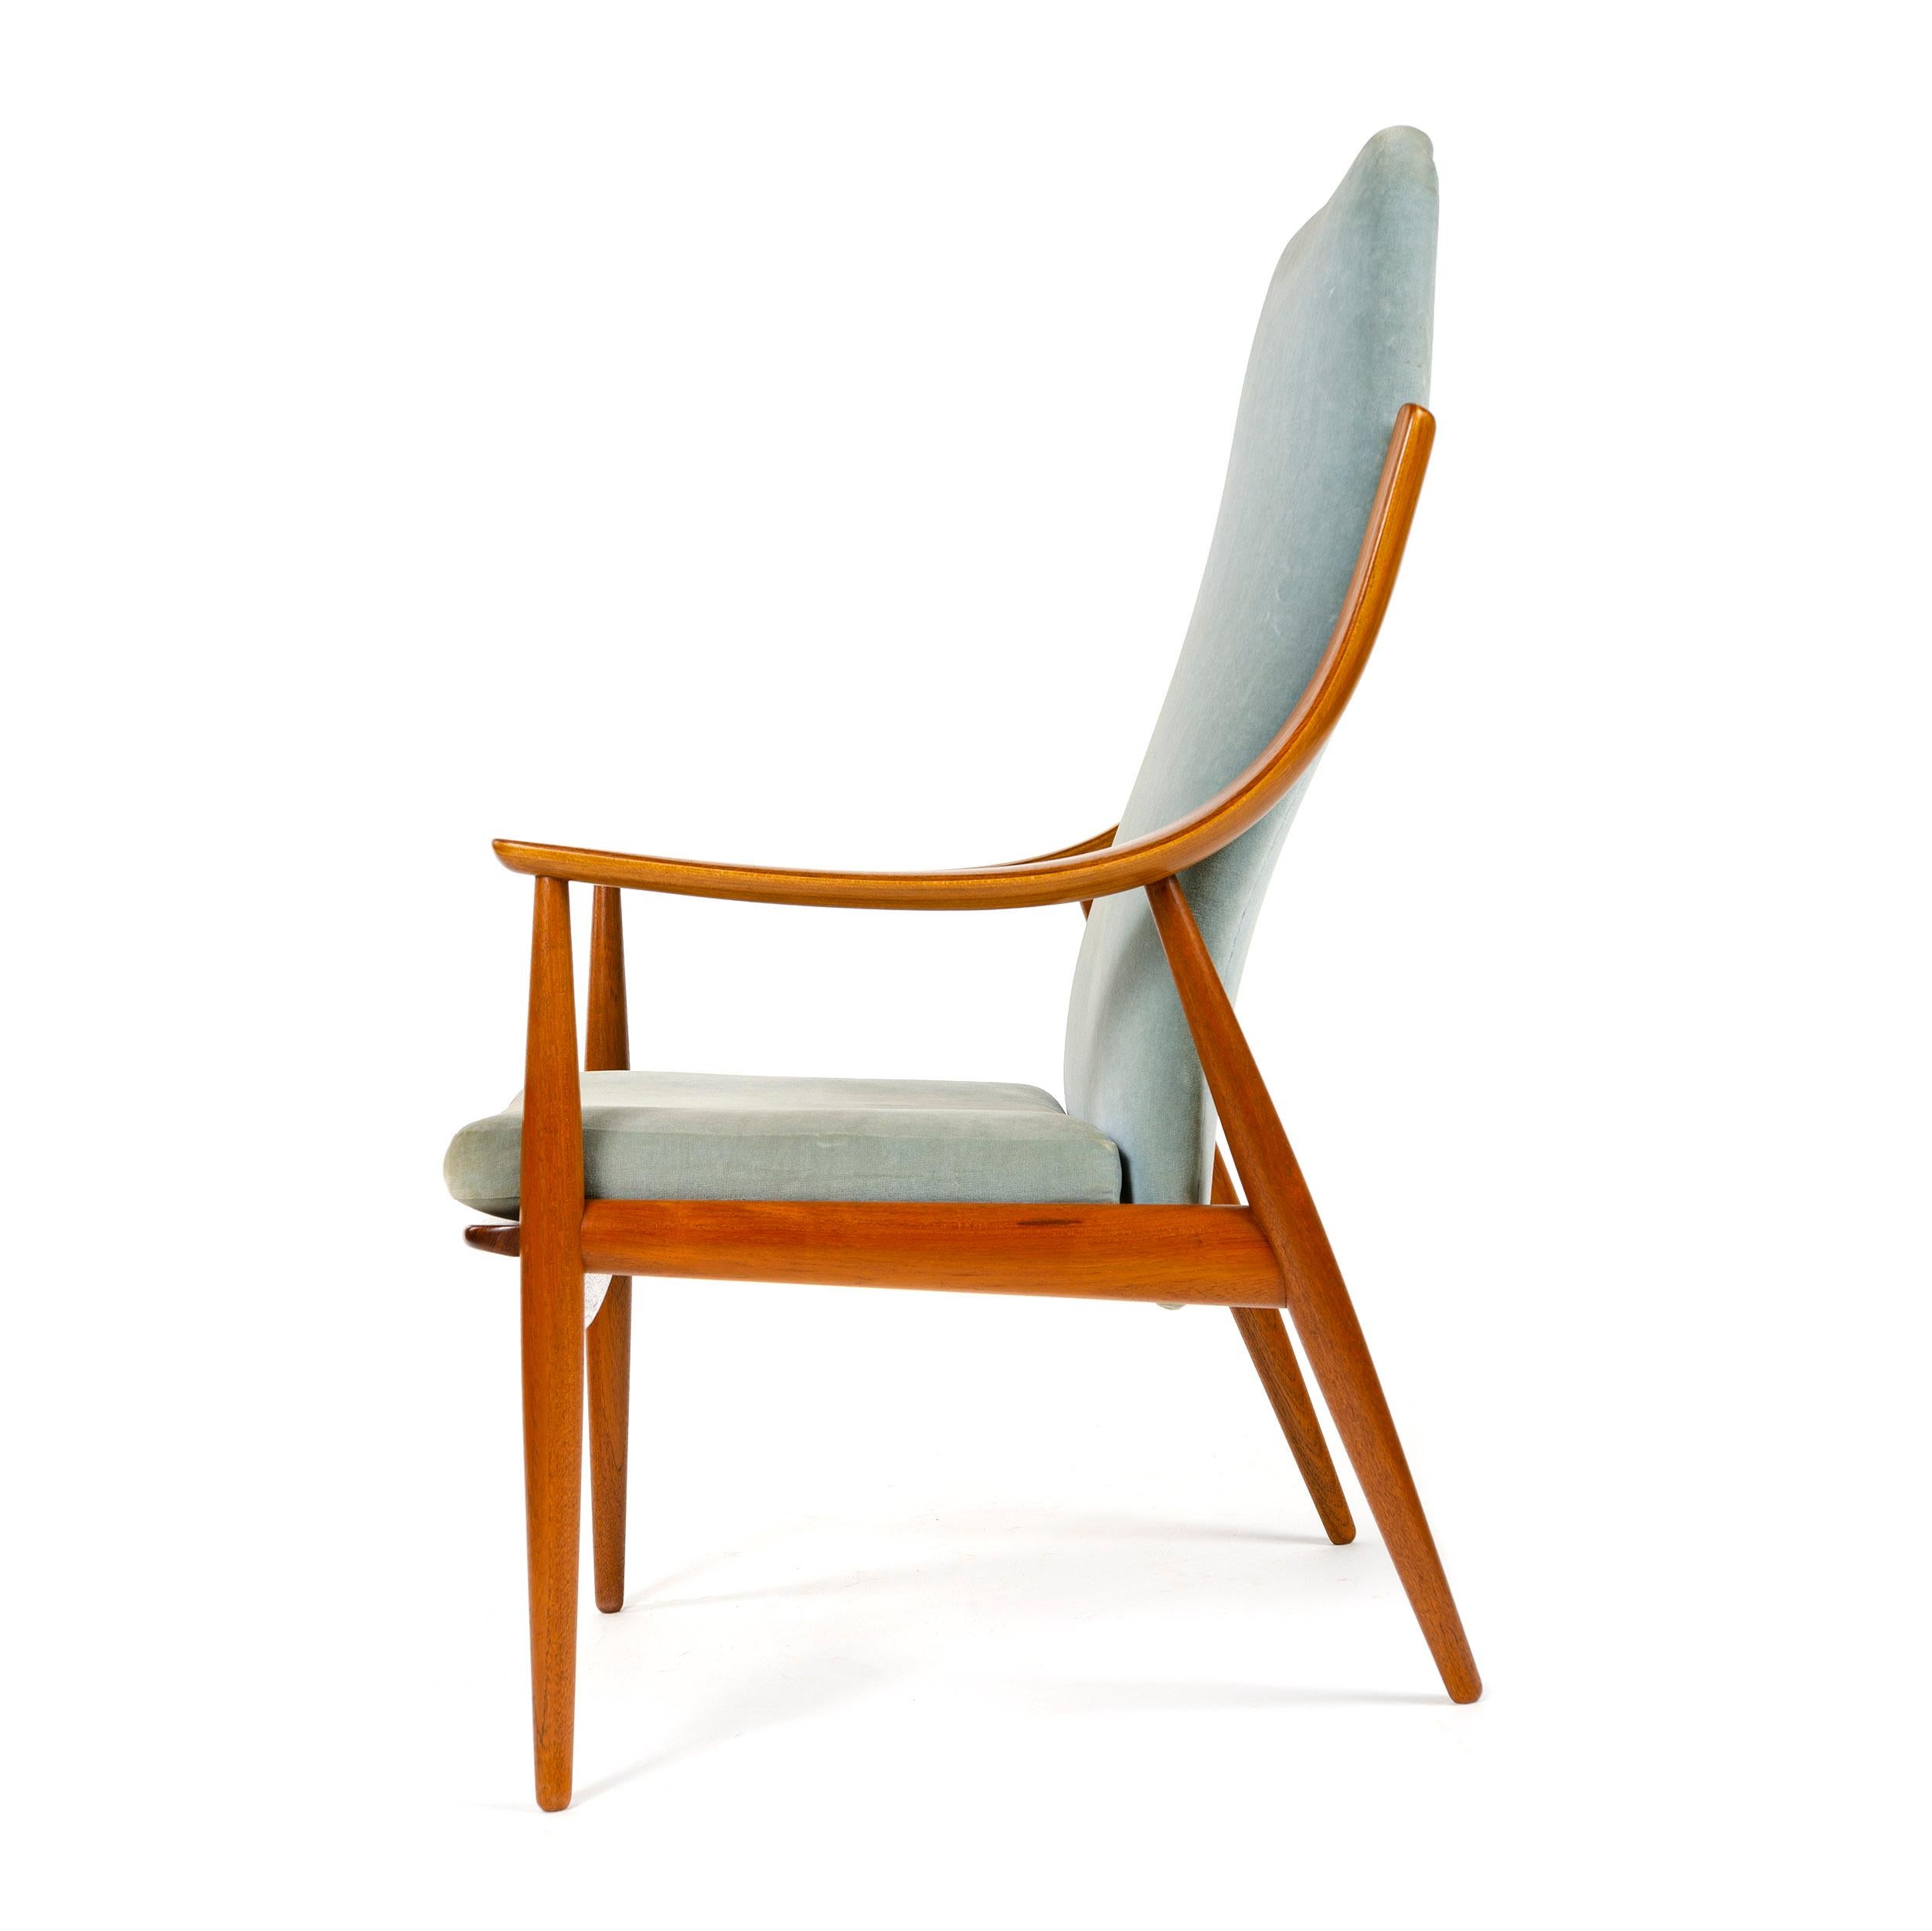 Un fauteuil à haut dossier conçu par Peter Hvidt et Orla Mölgaard-Nielsen, avec une structure en teck exposée, des bras courbés en stratifié expressifs et une tapisserie bleue vintage. Fabriqué au Danemark par France et Daverkosen, vers les années